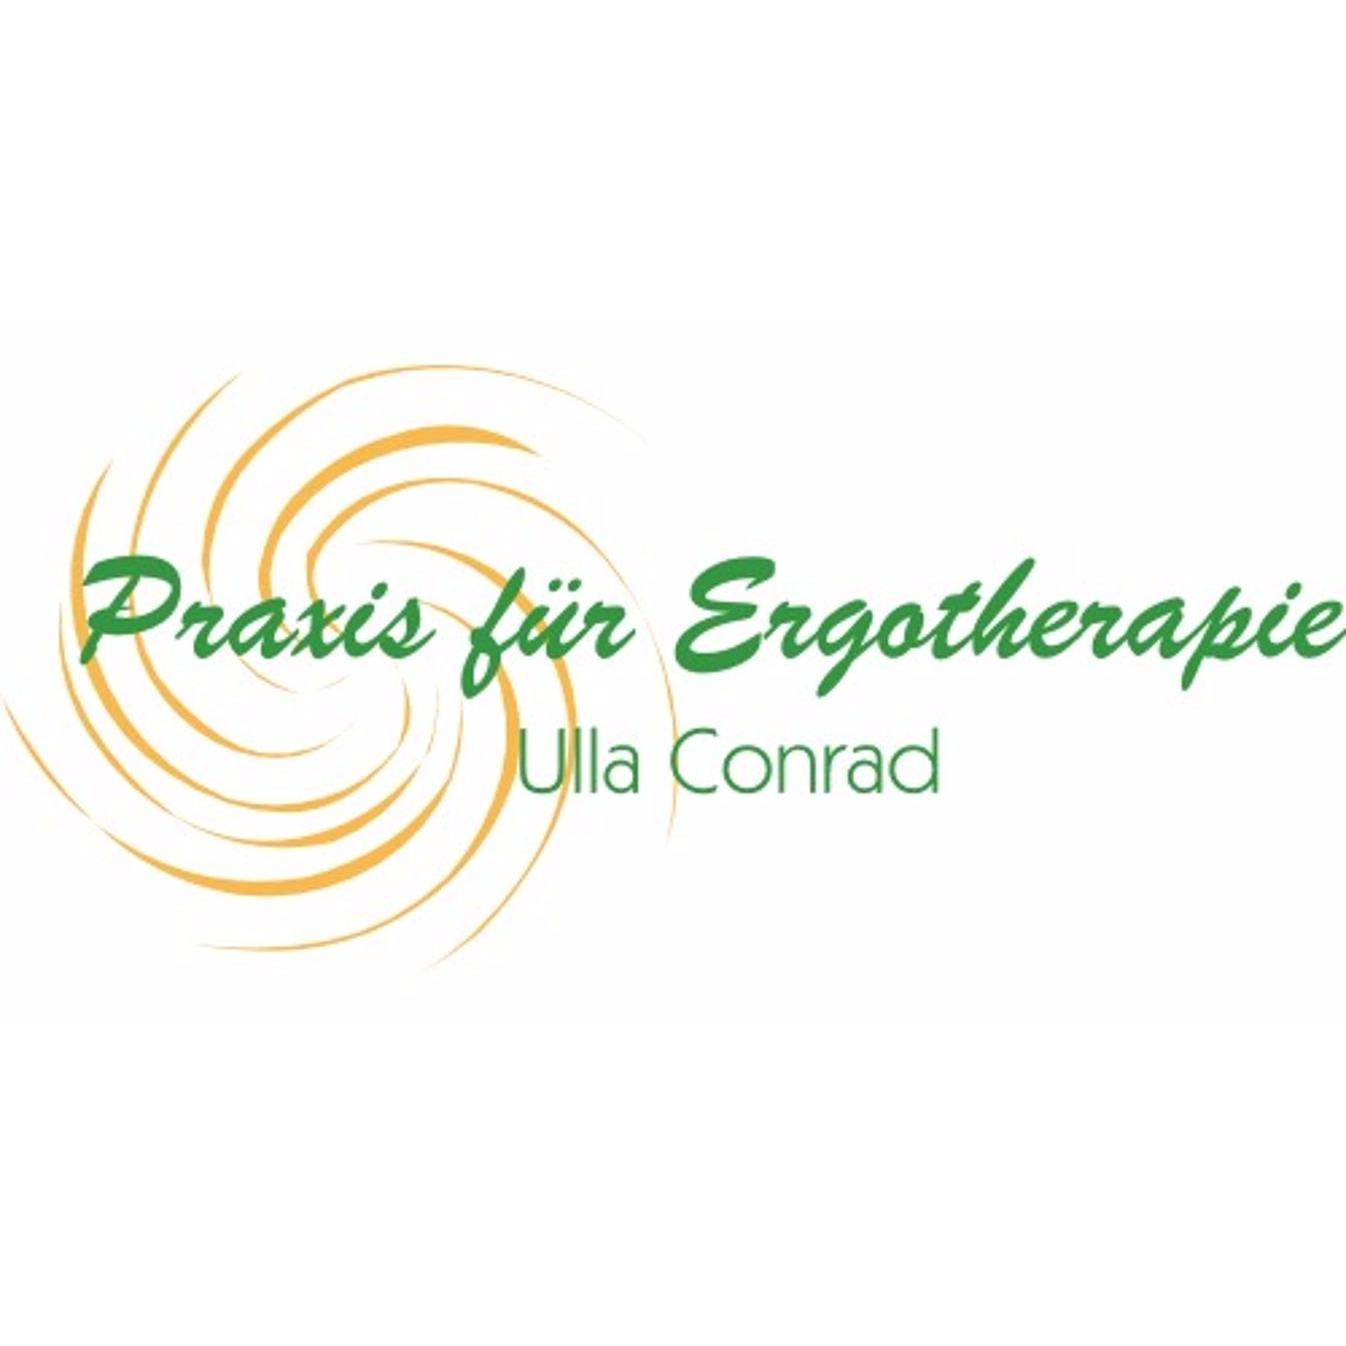 Praxis für Ergotherapie Ulla Conrad in Halle (Saale) - Logo